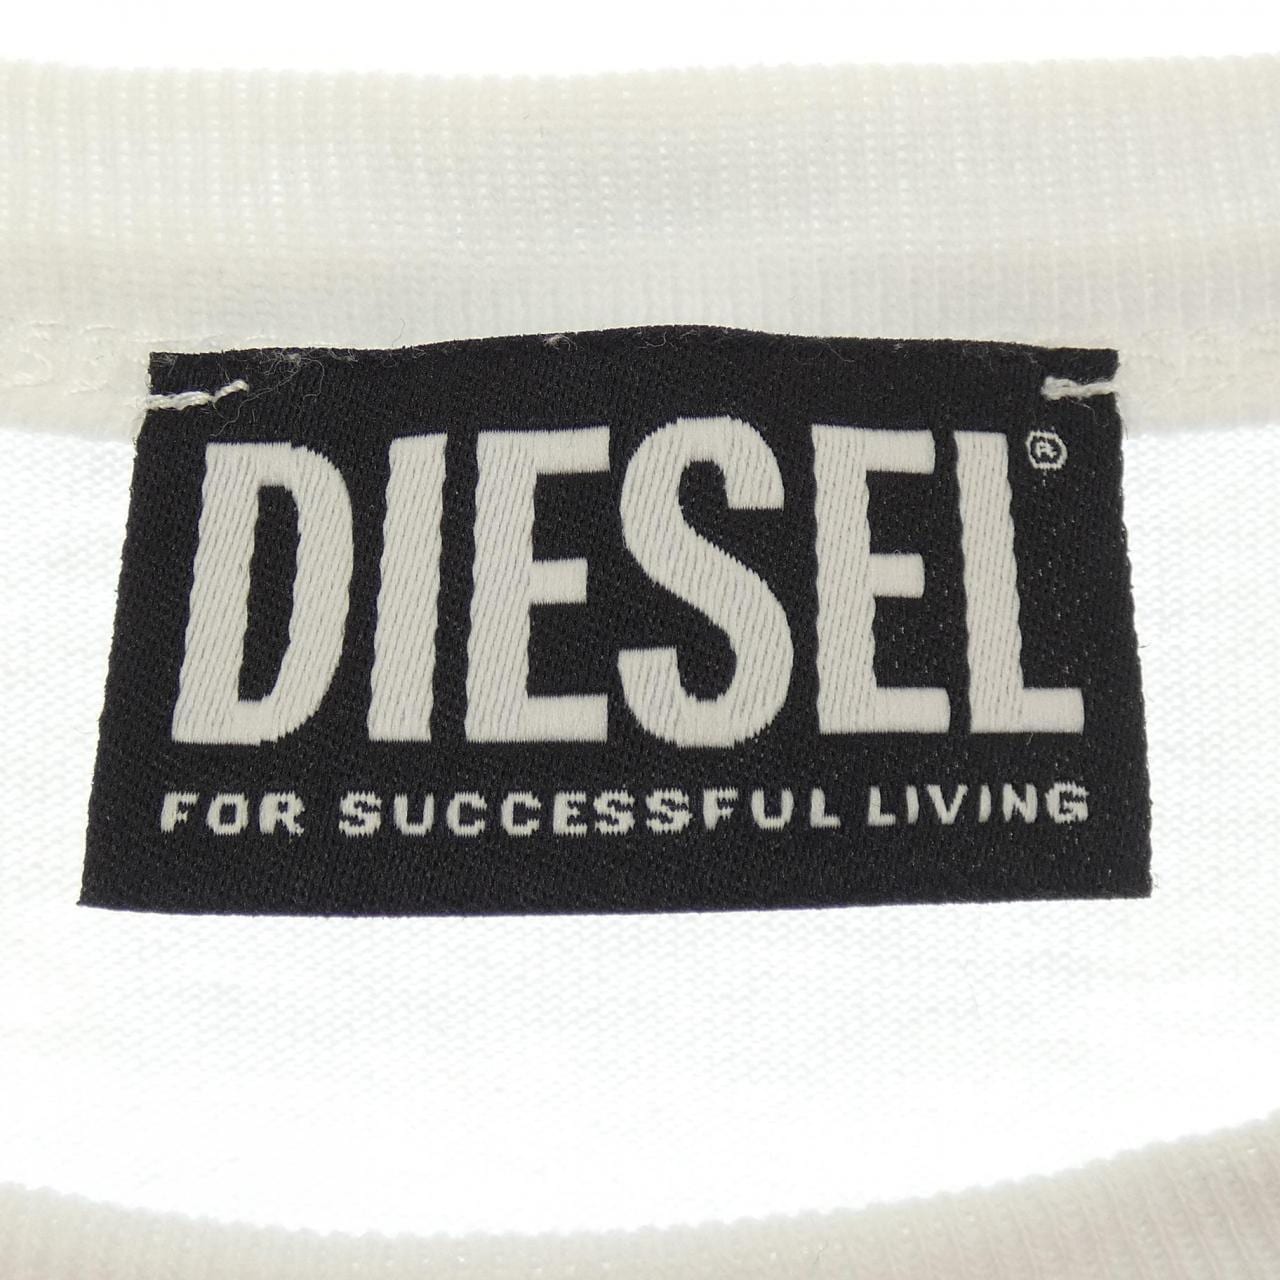 柴油DIESEL T恤